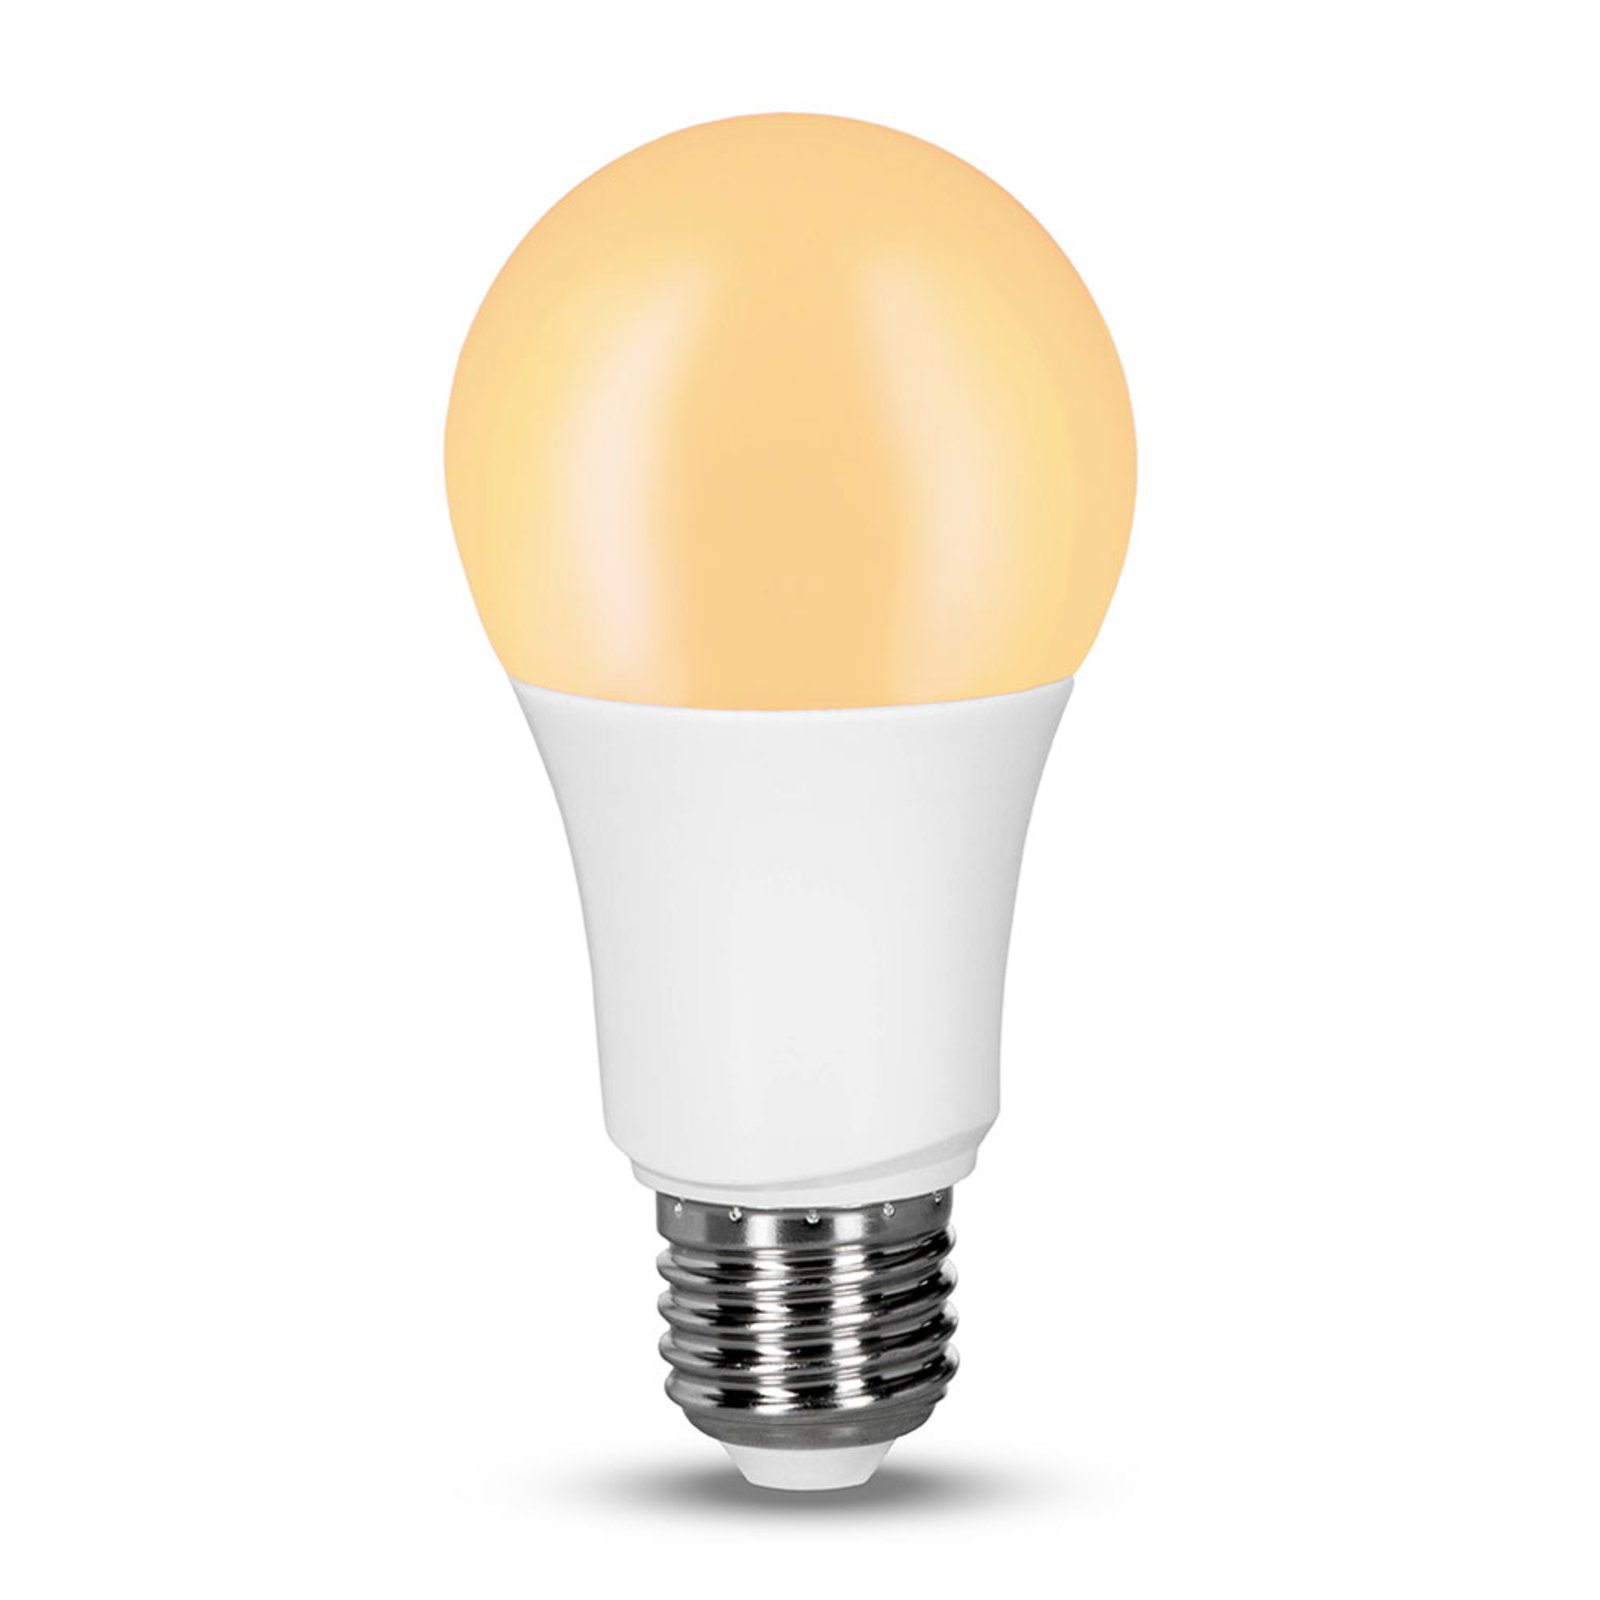 Müller Licht tint dimming-LED-lamppu E27 9W 2 700K